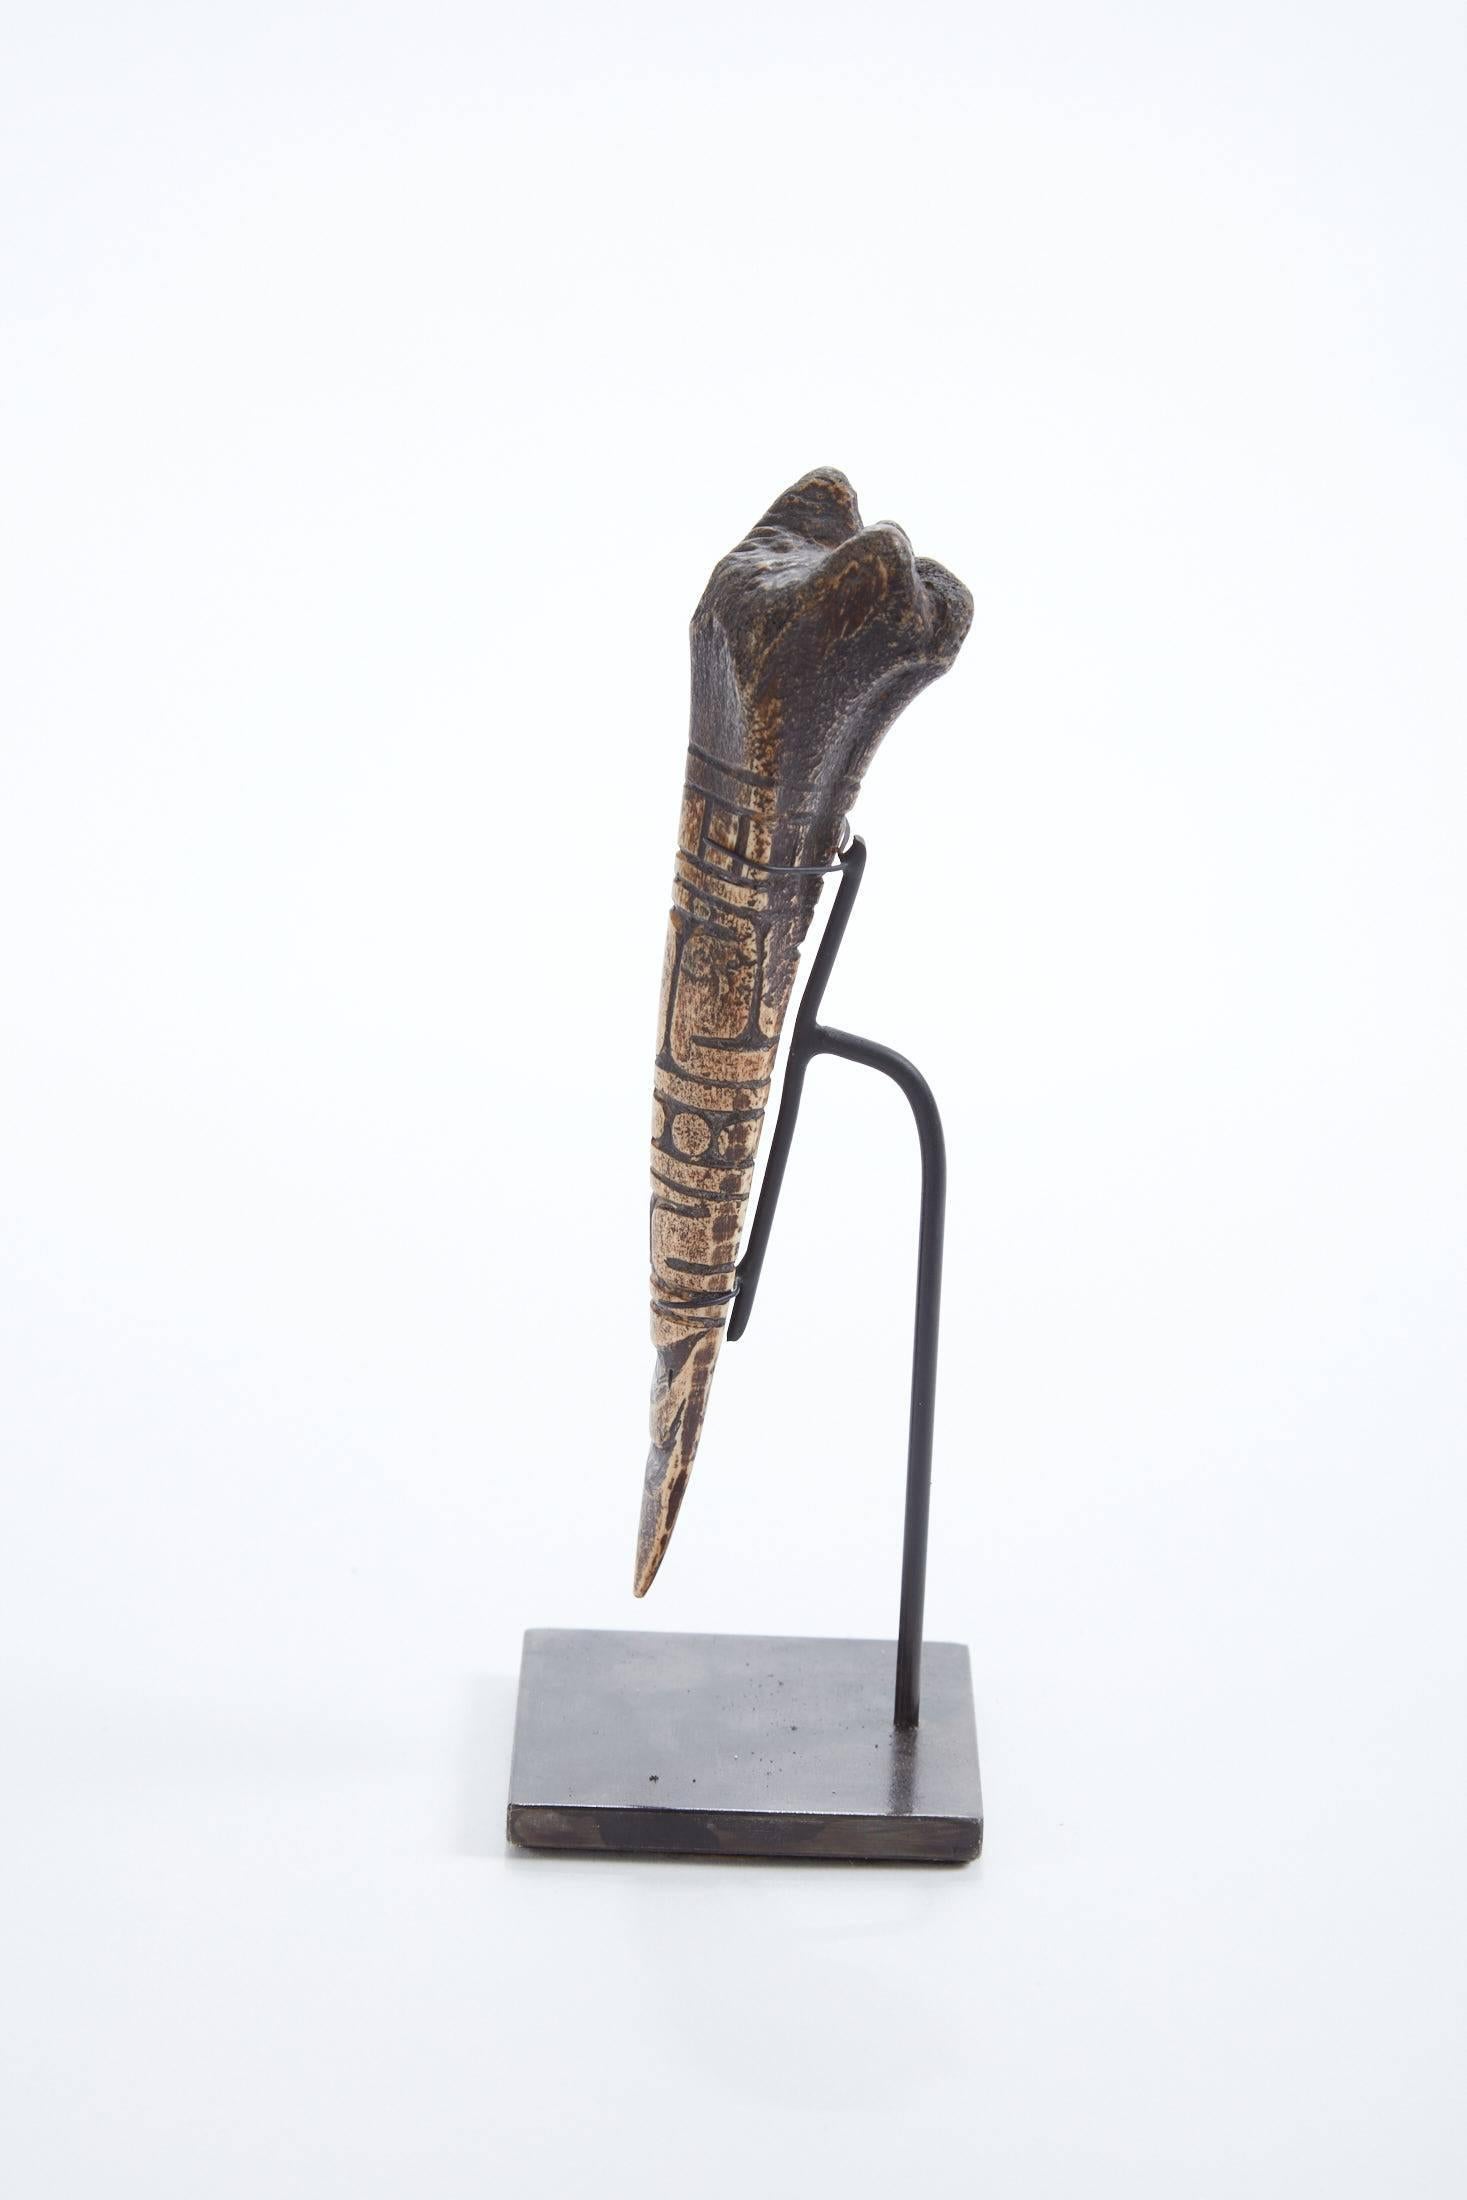 Ancien outil primitif en os sculpté de
Cameroun
Bel et délicat Objet d'Art.